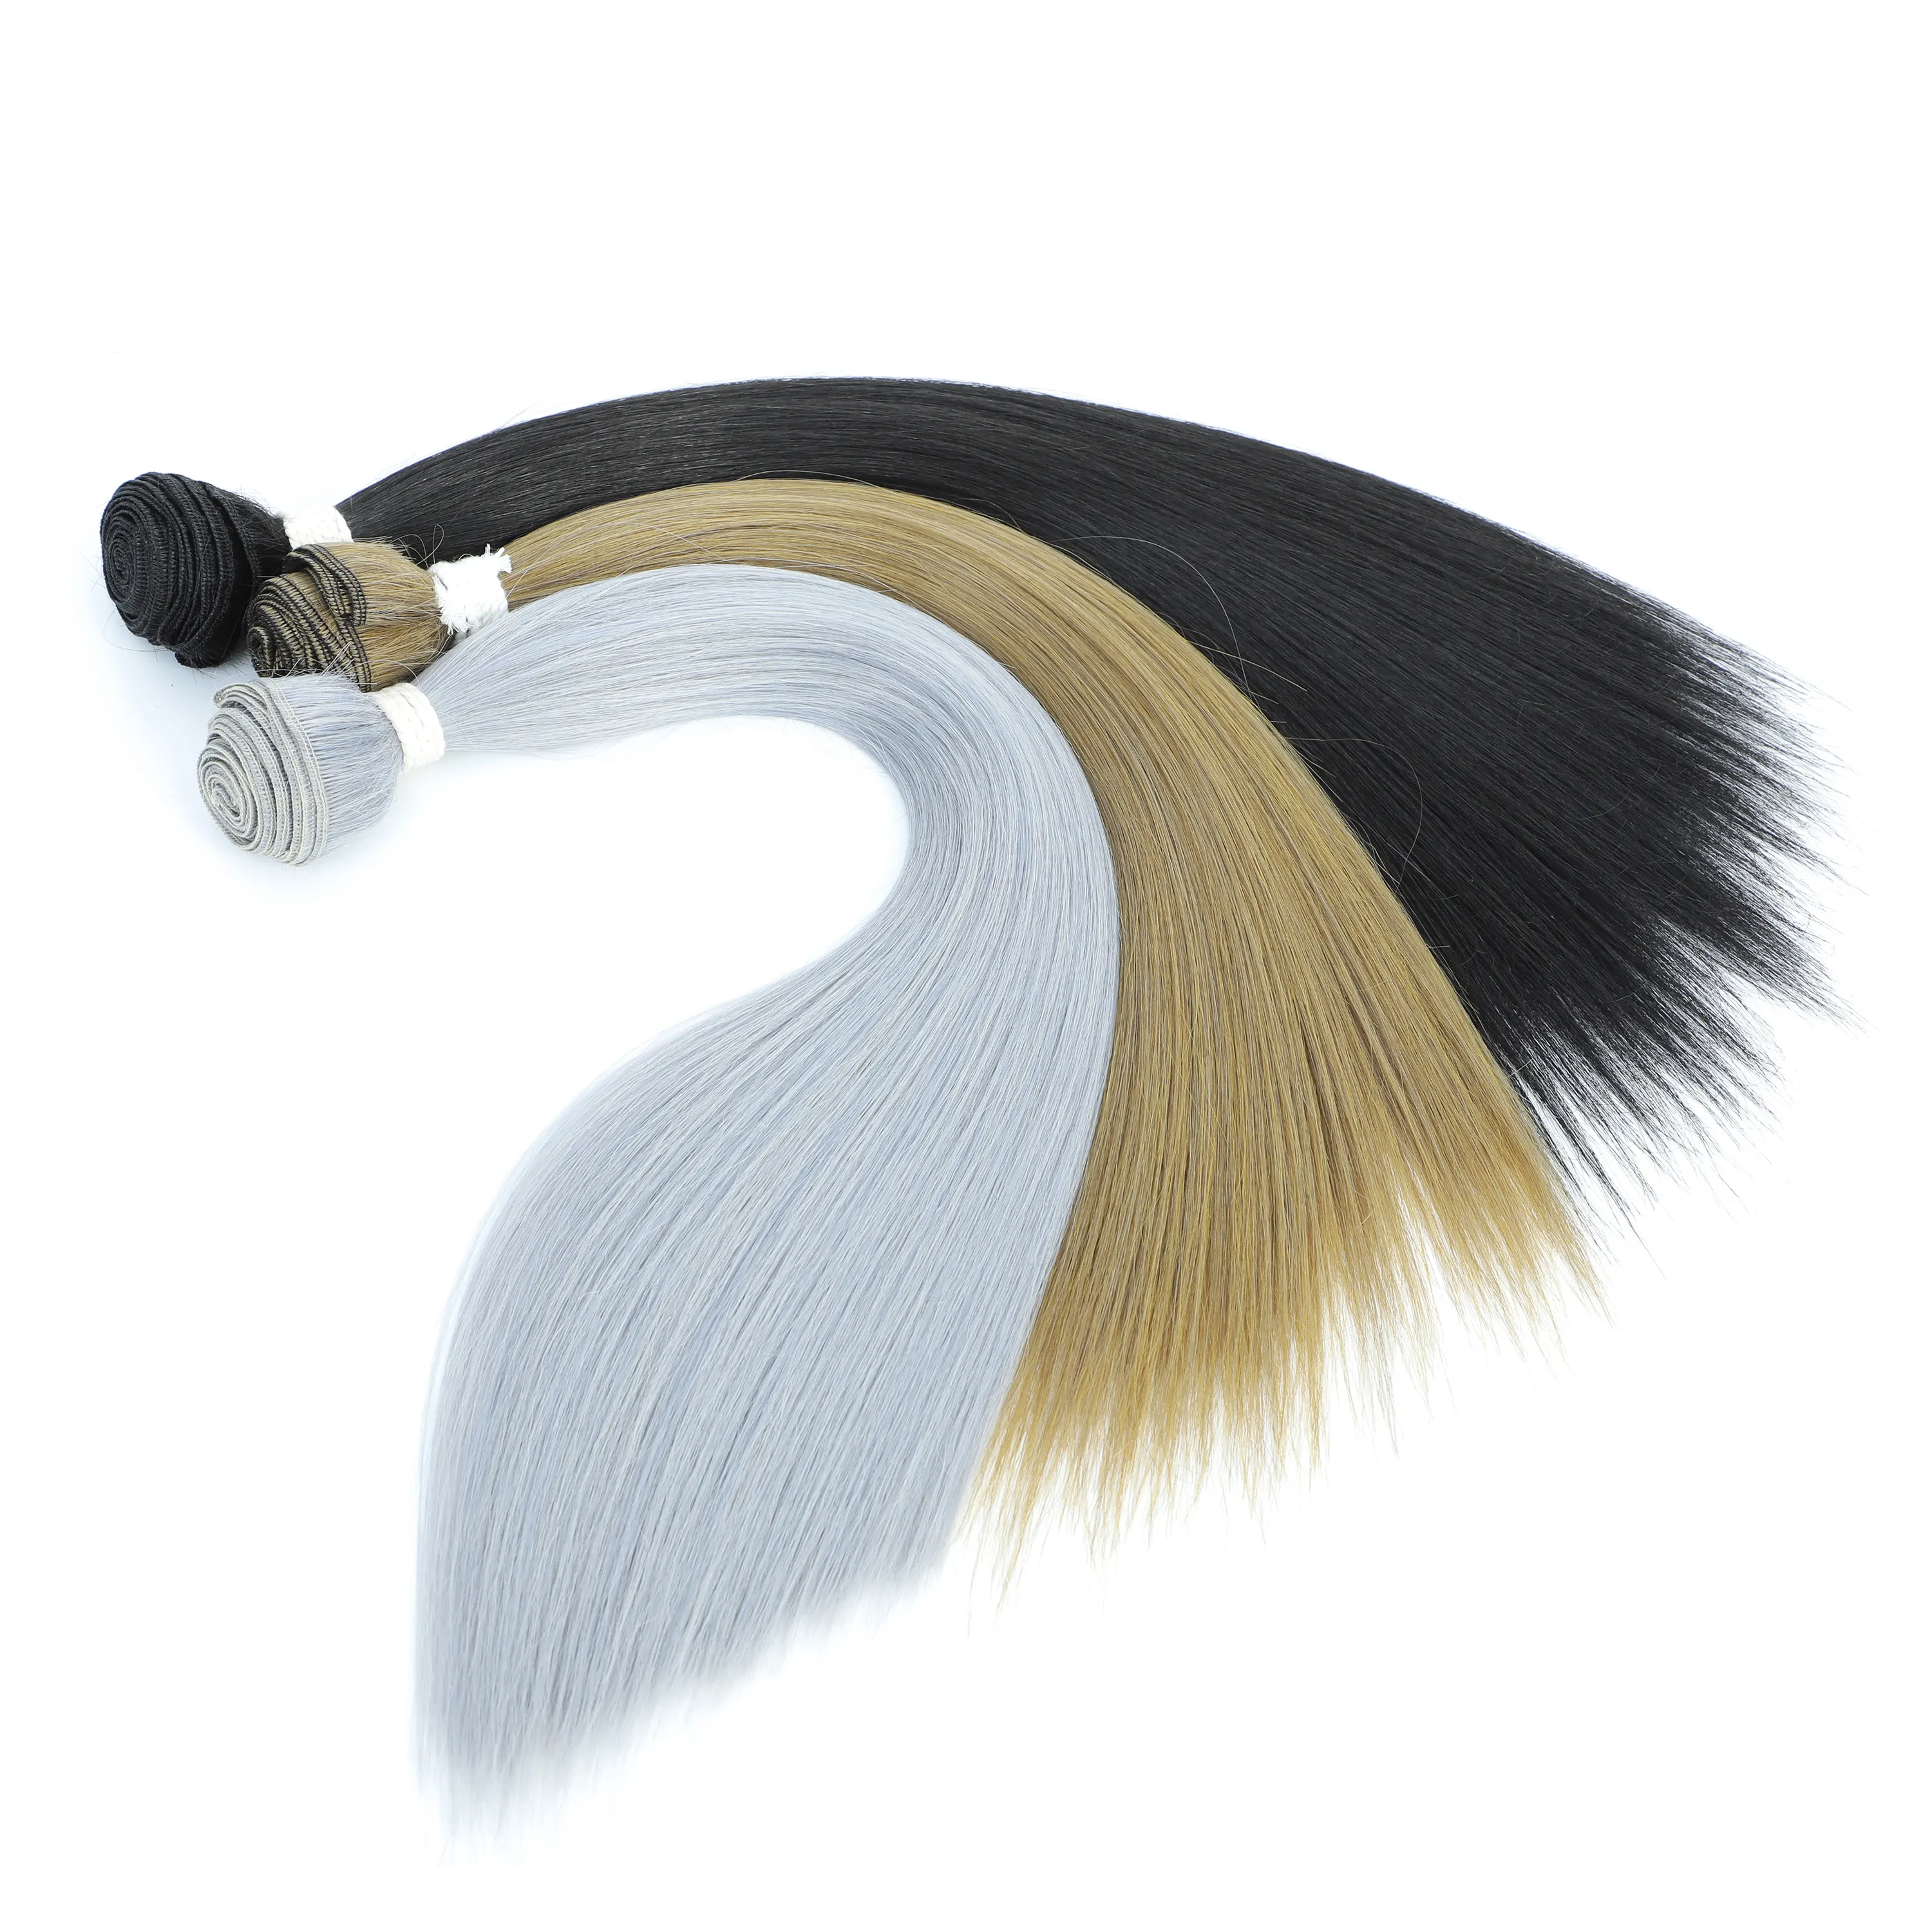 हड्डी के सीधे बालों के बंडल सैलून प्राकृतिक बालों के विस्तार फाइबर सुपर लंबे सिंथेटिक याकी सीधे बालों को बुनाई करते हैं।